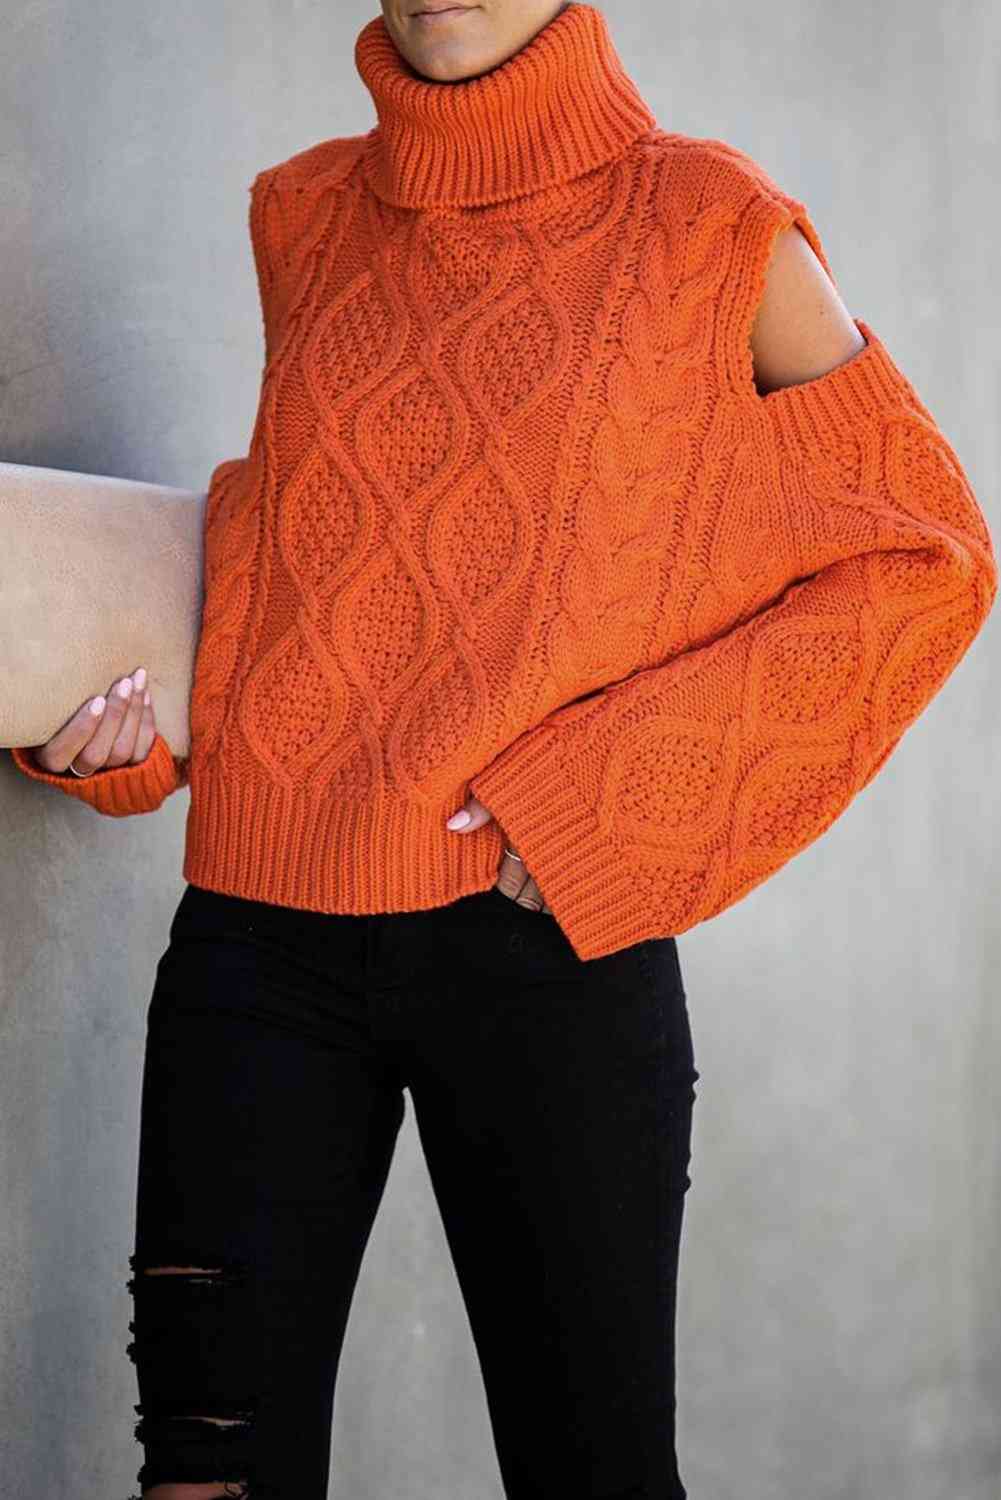 Pulover, džemper sa teksturom hladnih ramena